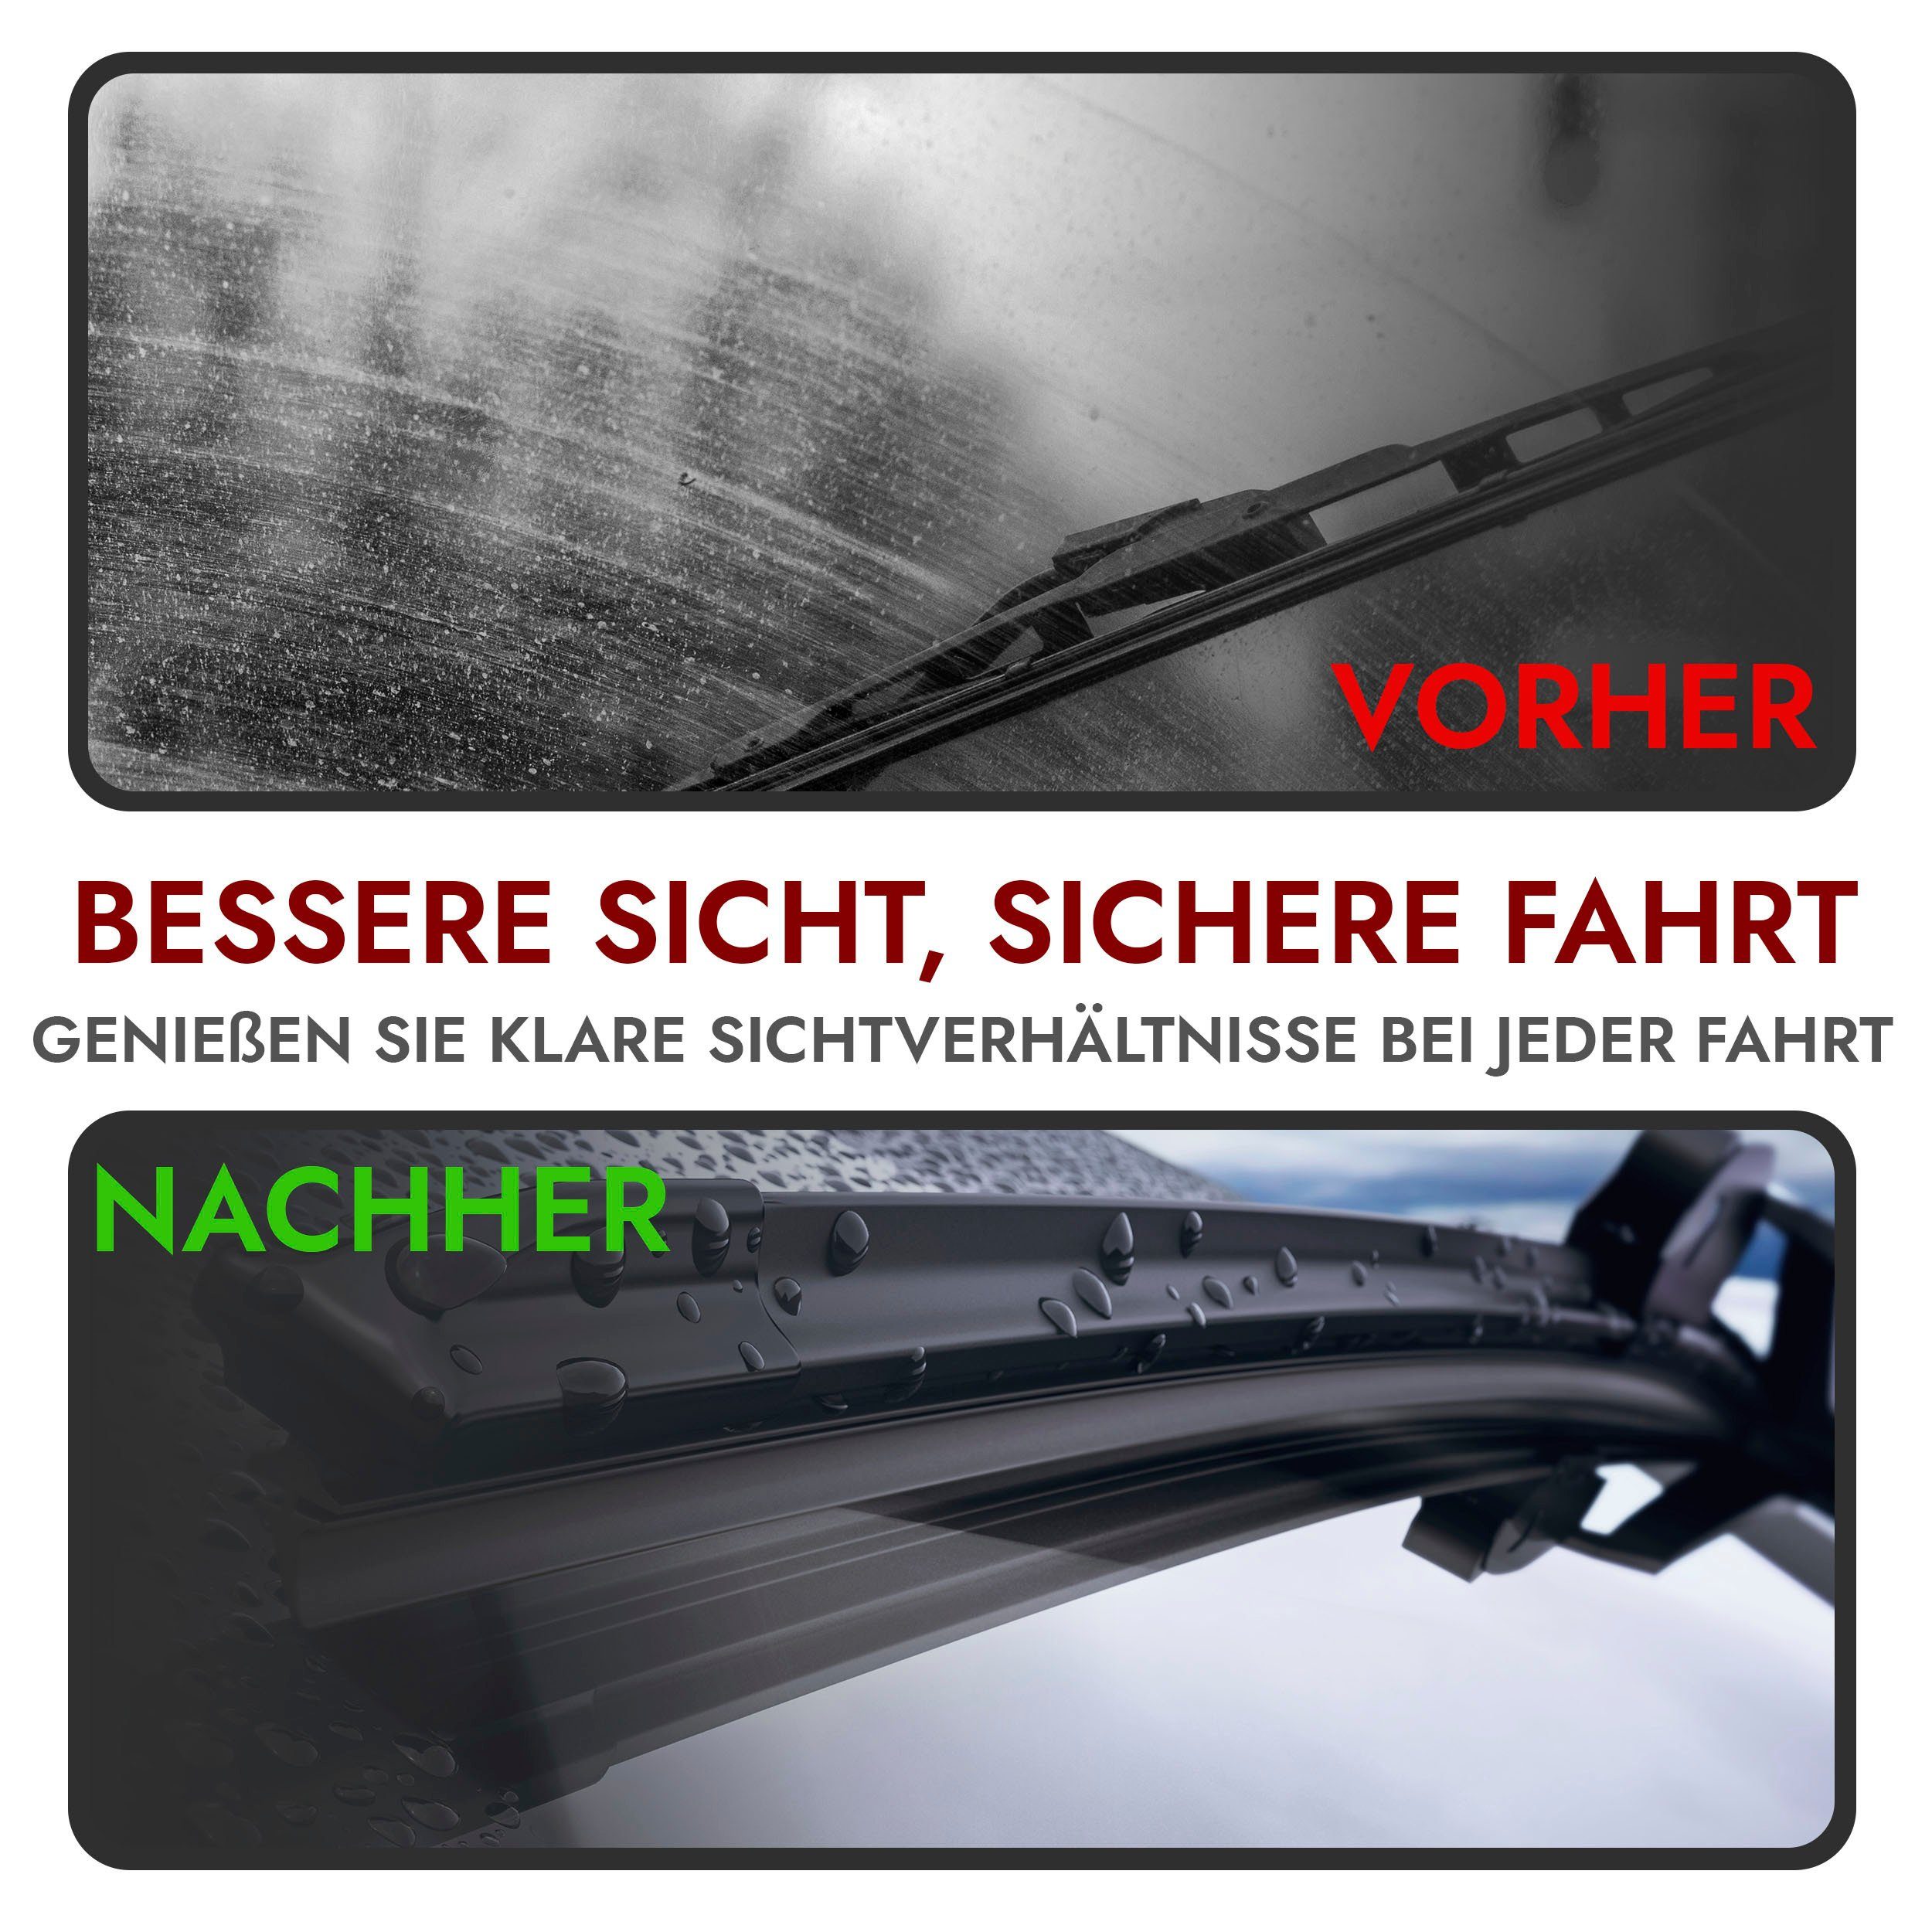 MICHELIN Scheibenwischer Set ECO100, VW Golf 5, Golf 6, Passat, 600/475mm